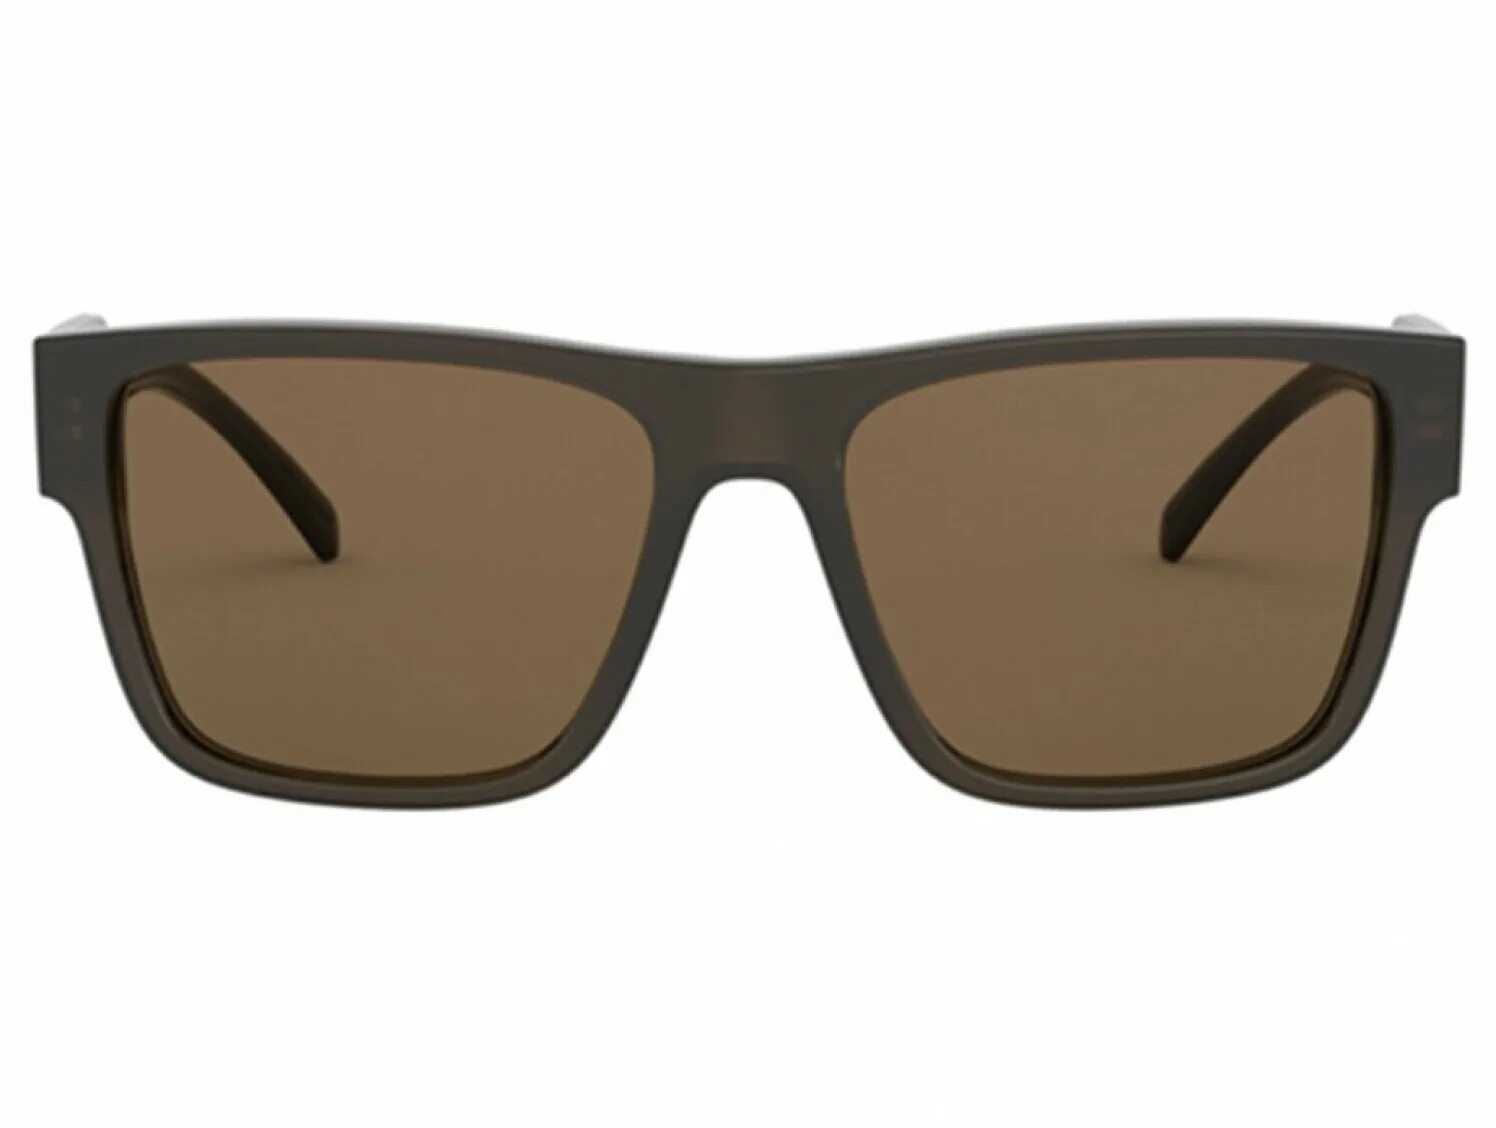 RB 4184. Versace Sunglasses Brown. Купить солнцезащитные очки Версаче Хавана.